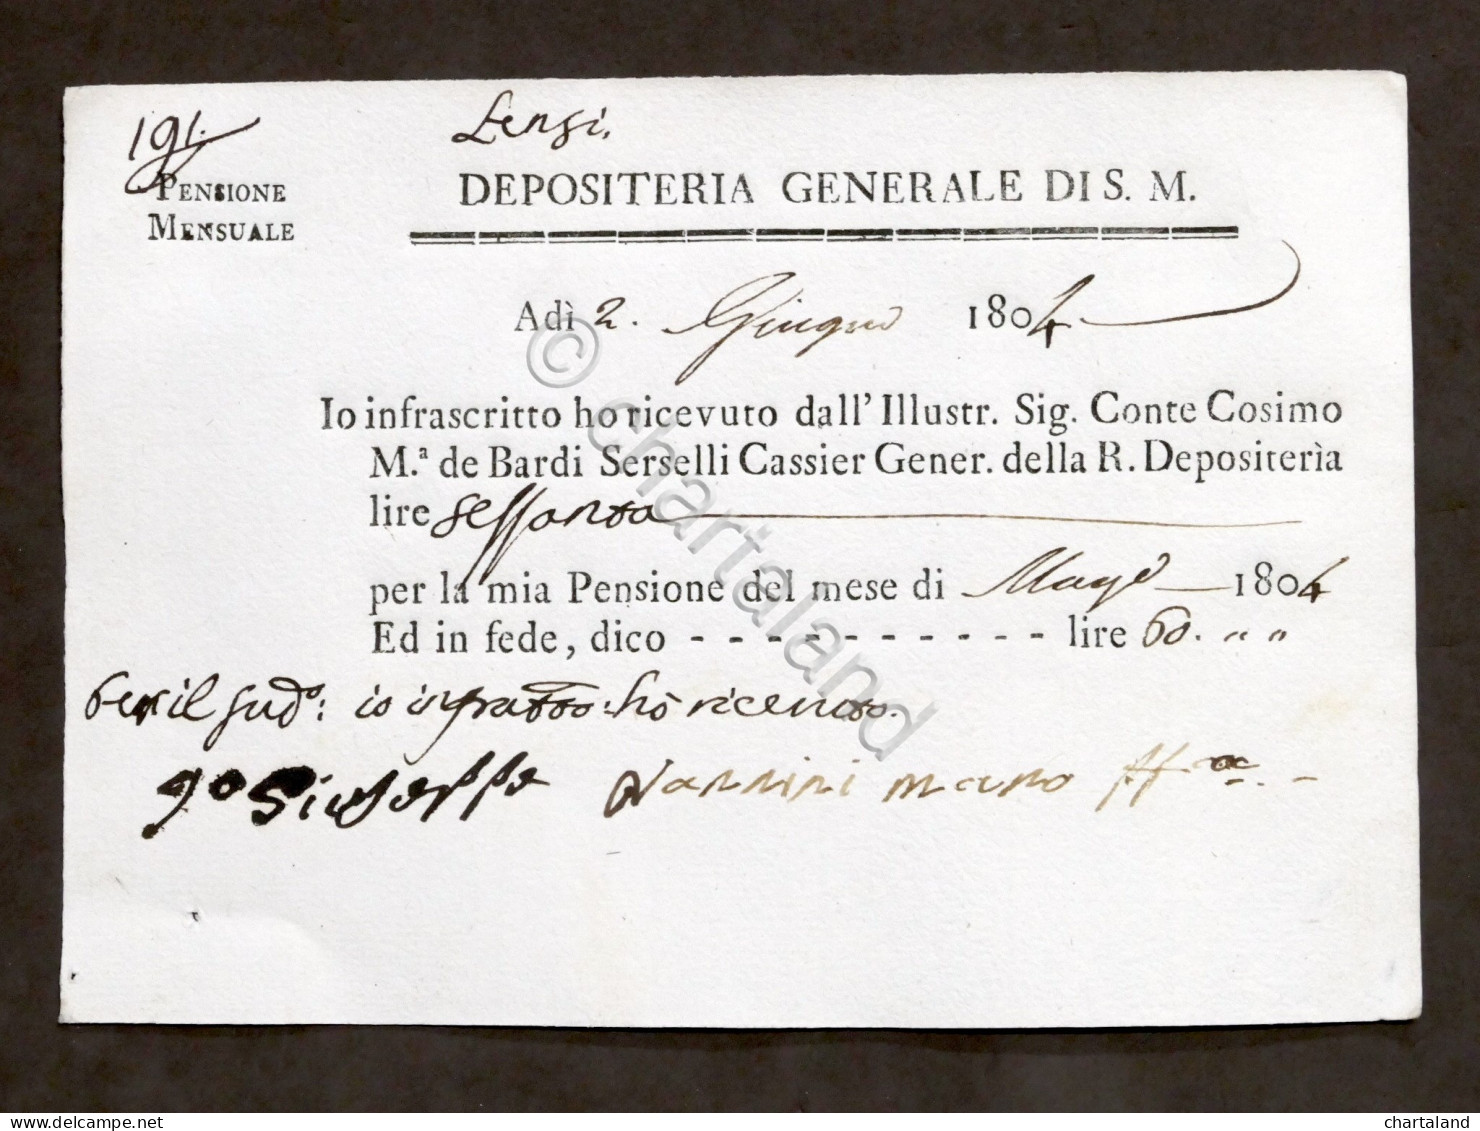 Depositeria Generale Di S.M. - Ricevuta Pensione Mensile - Giugno 1804 - Ohne Zuordnung